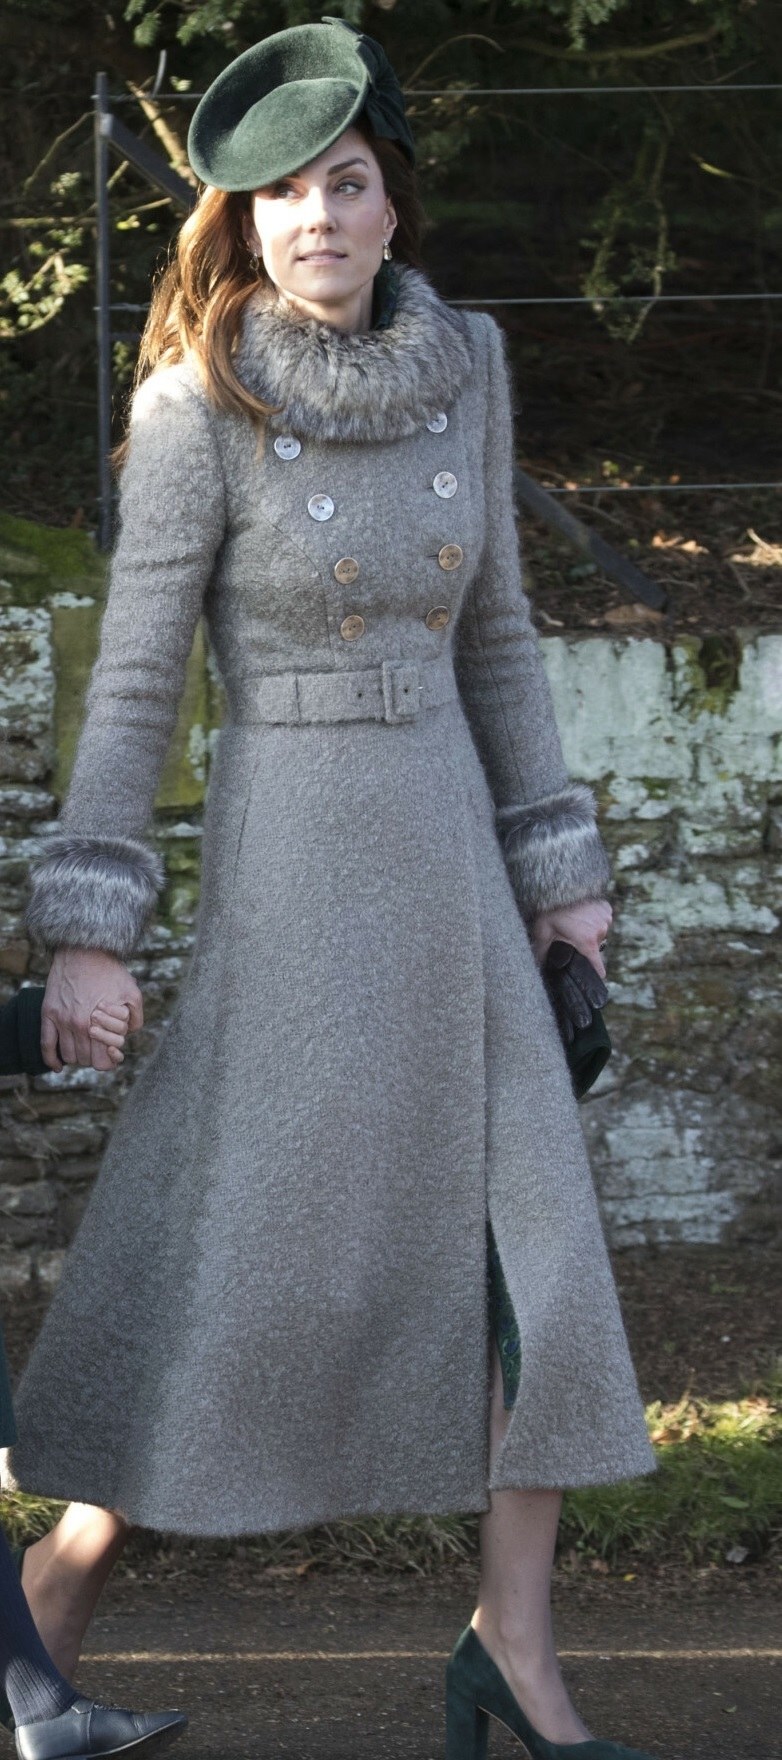 Stylizacja księżnej Kate na święta w 2019 roku. /Stephen Lock /Polaris Images/East News /East News